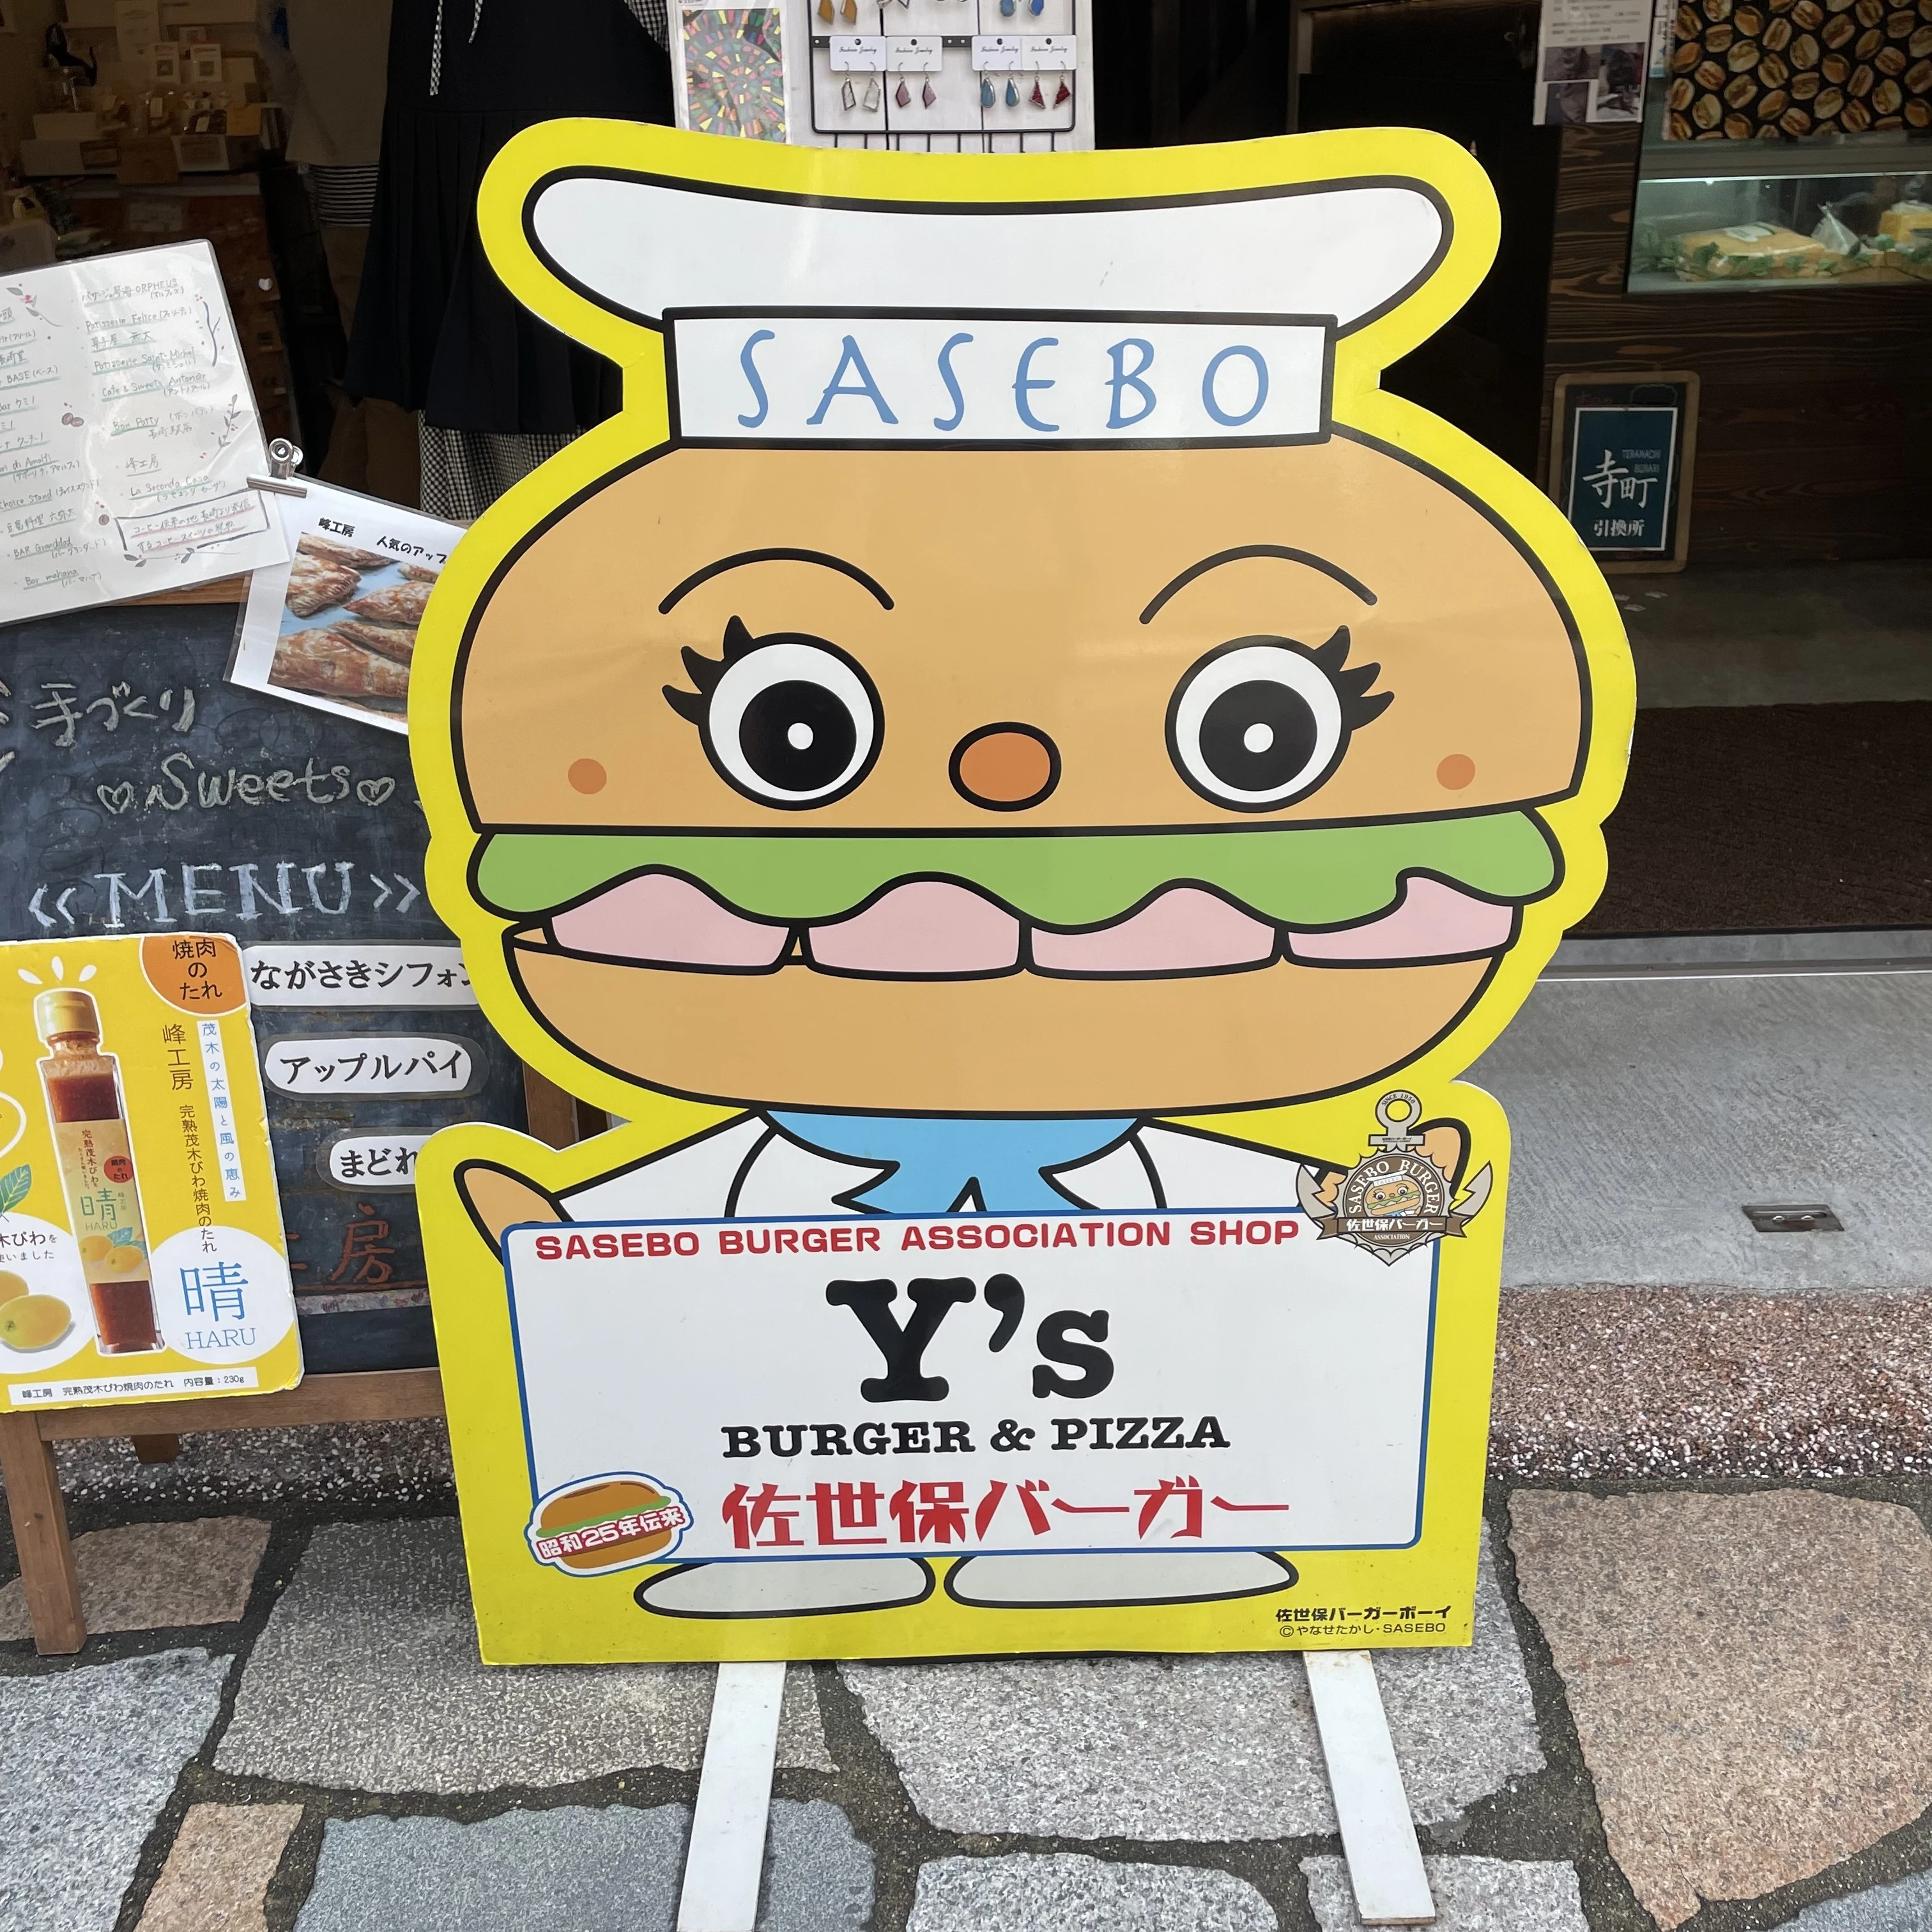 Y’s Burger